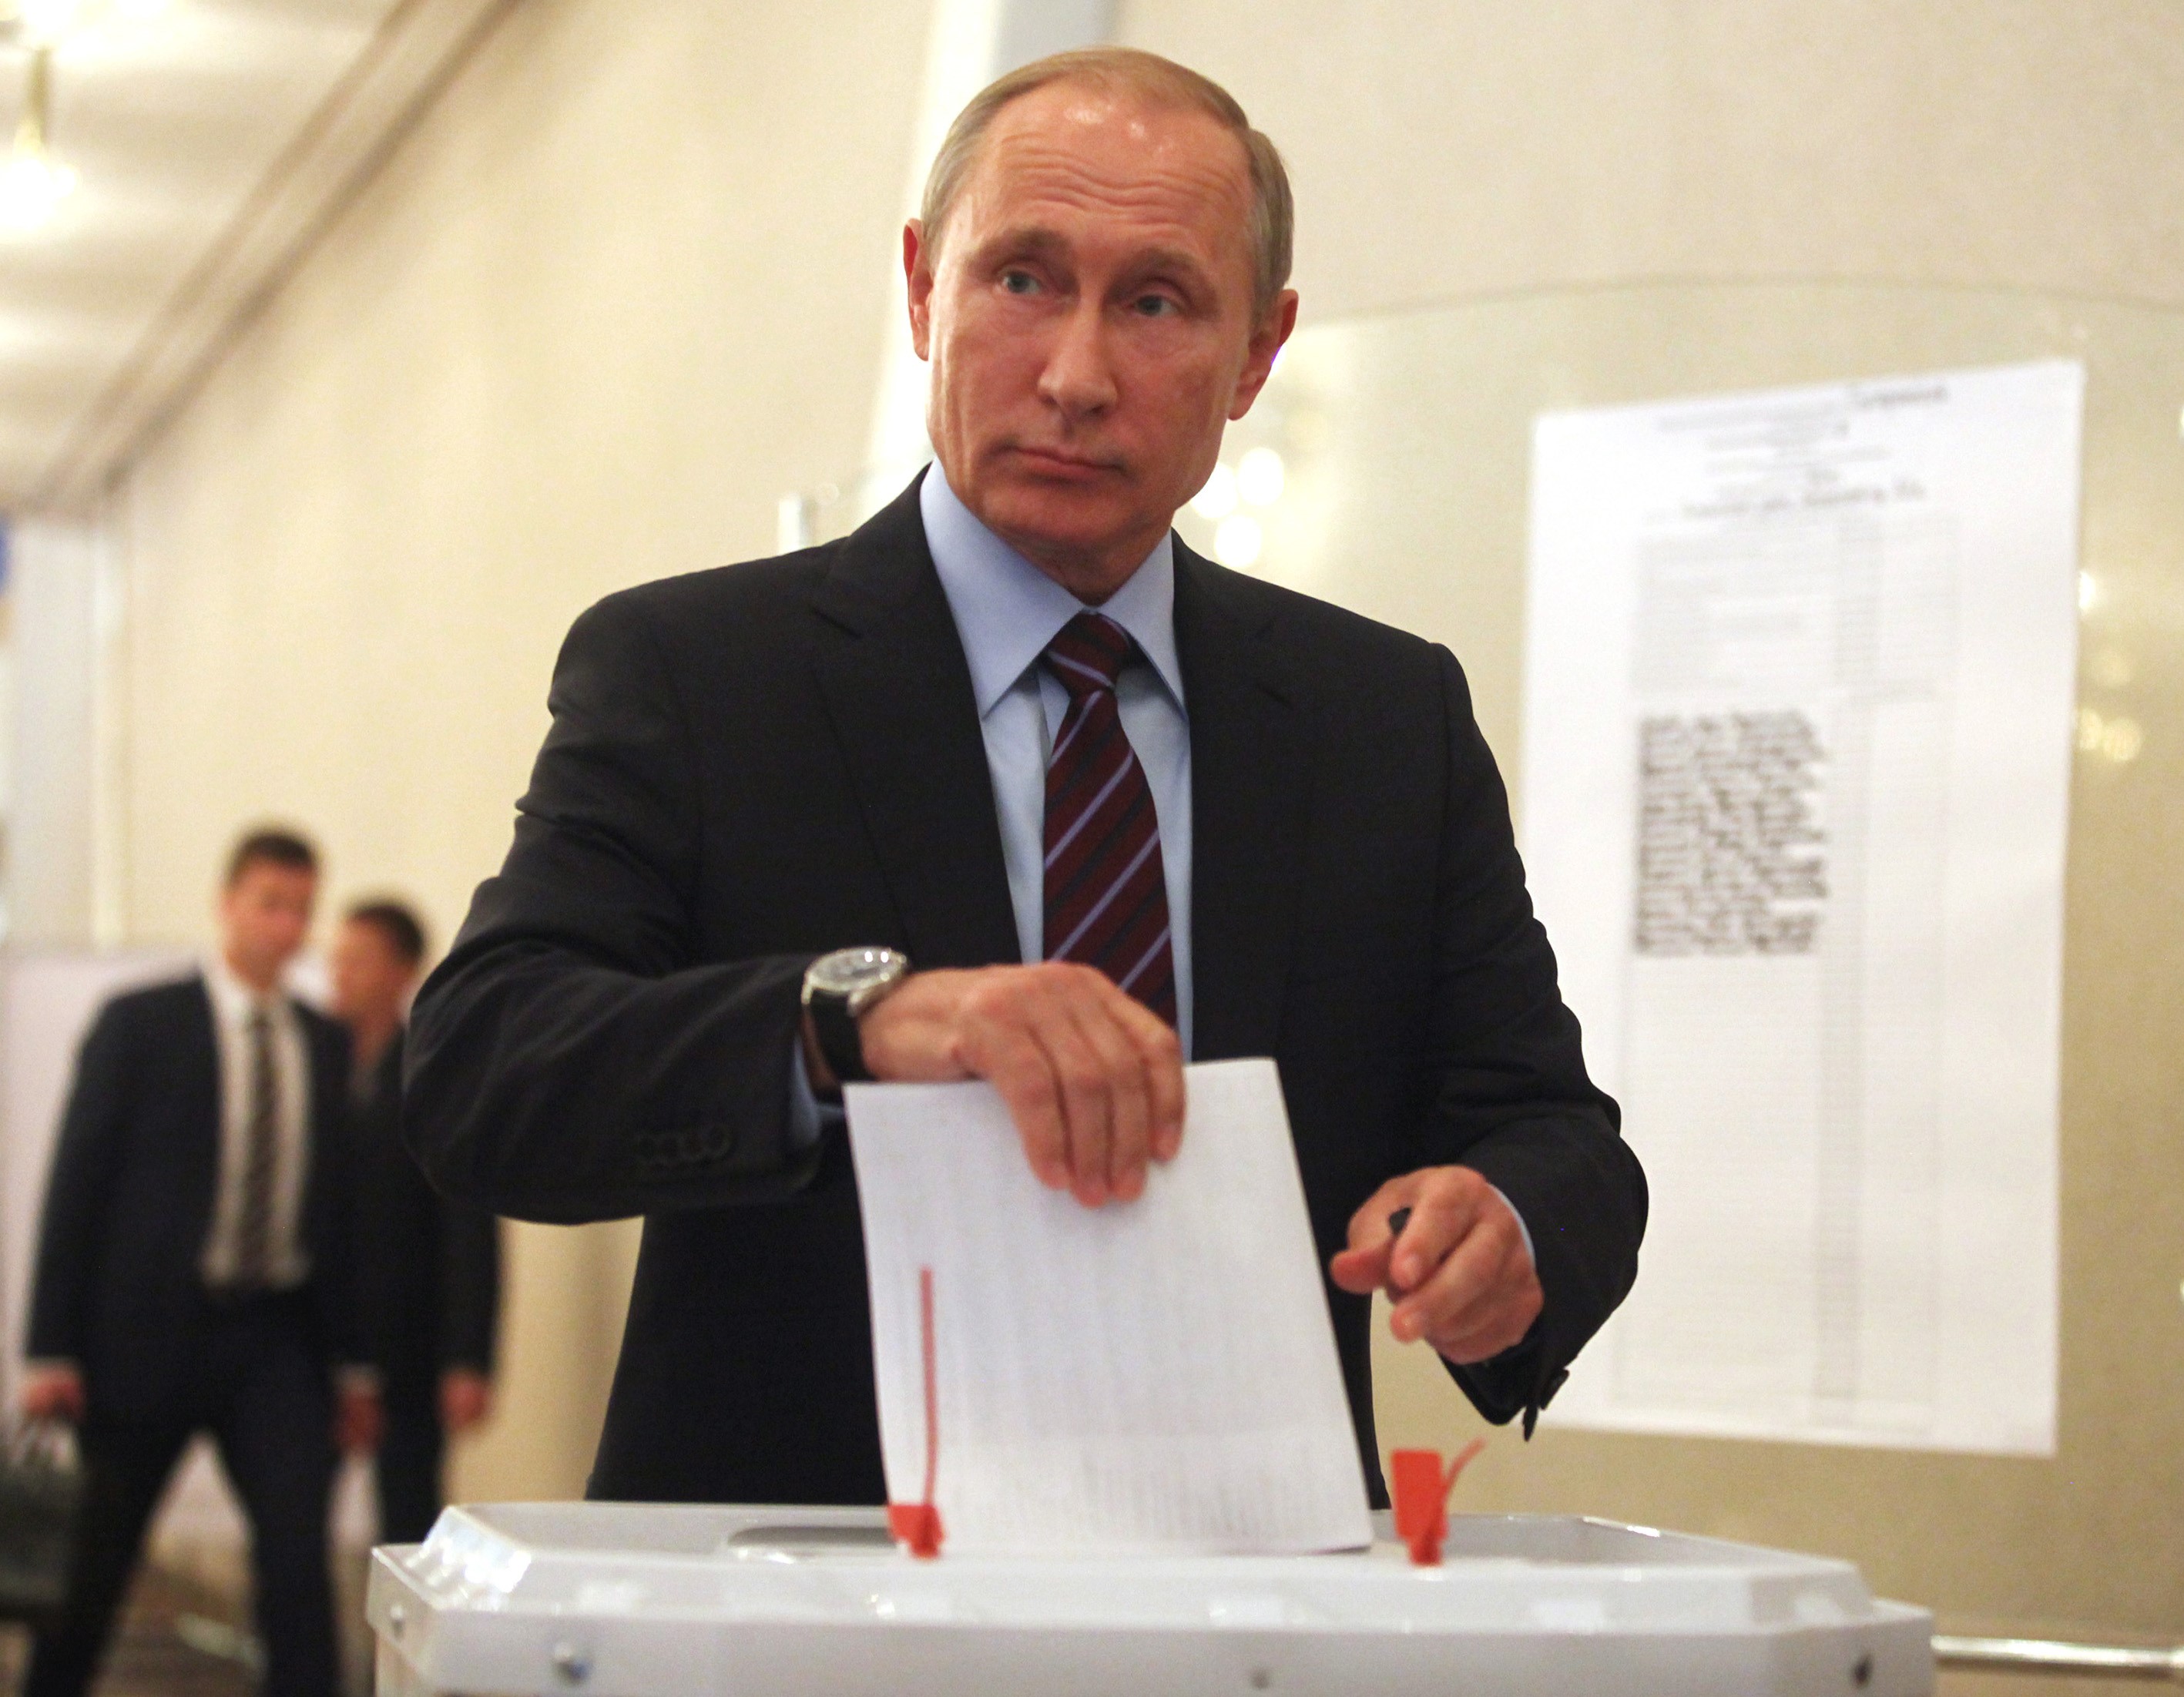 A Reuters megszámolta, hogy 256-an szavaztak egy orosz szavazóhelyiségben. A hivatalos eredményben ehhez képest 1867 szavazó szerepelt